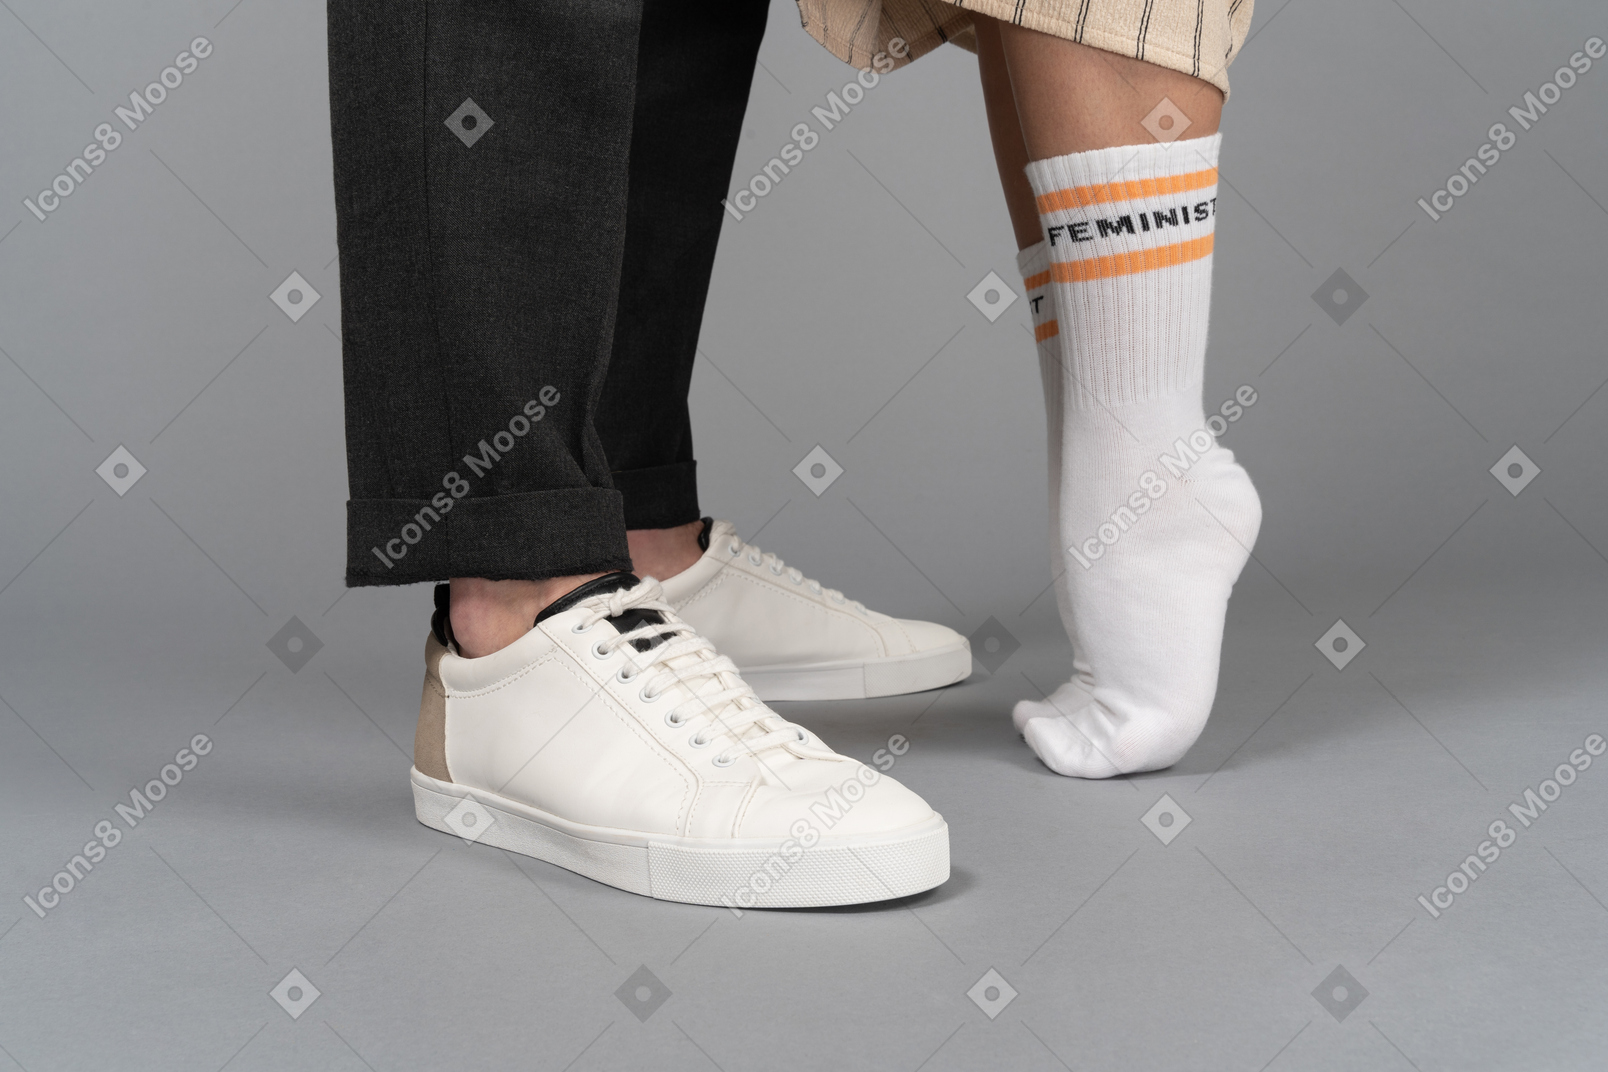 Primo piano delle scarpe da ginnastica dell'uomo e della donna in punta di piedi